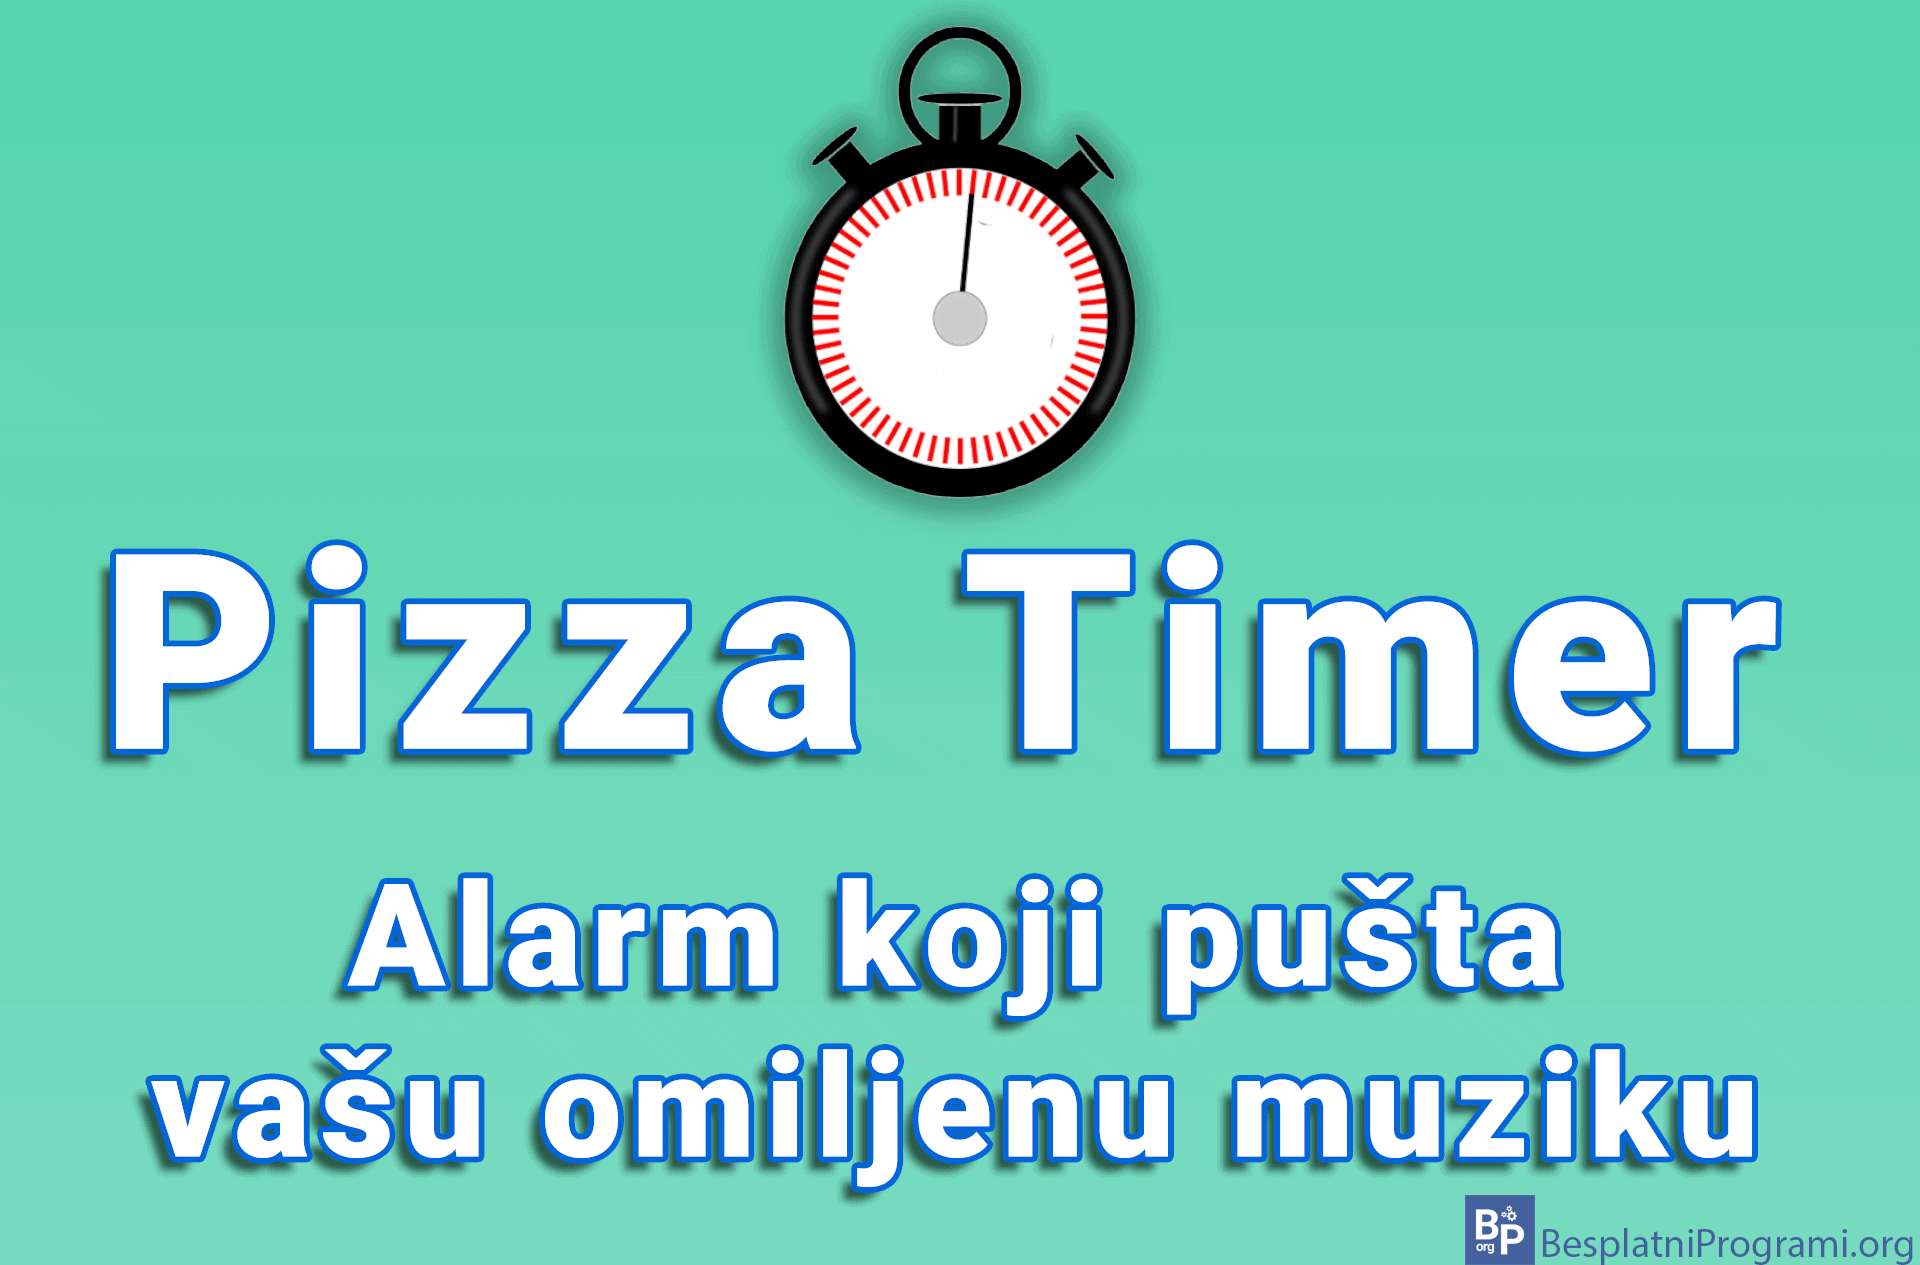 Pizza Timer - alarm koji pušta vašu omiljenu muziku